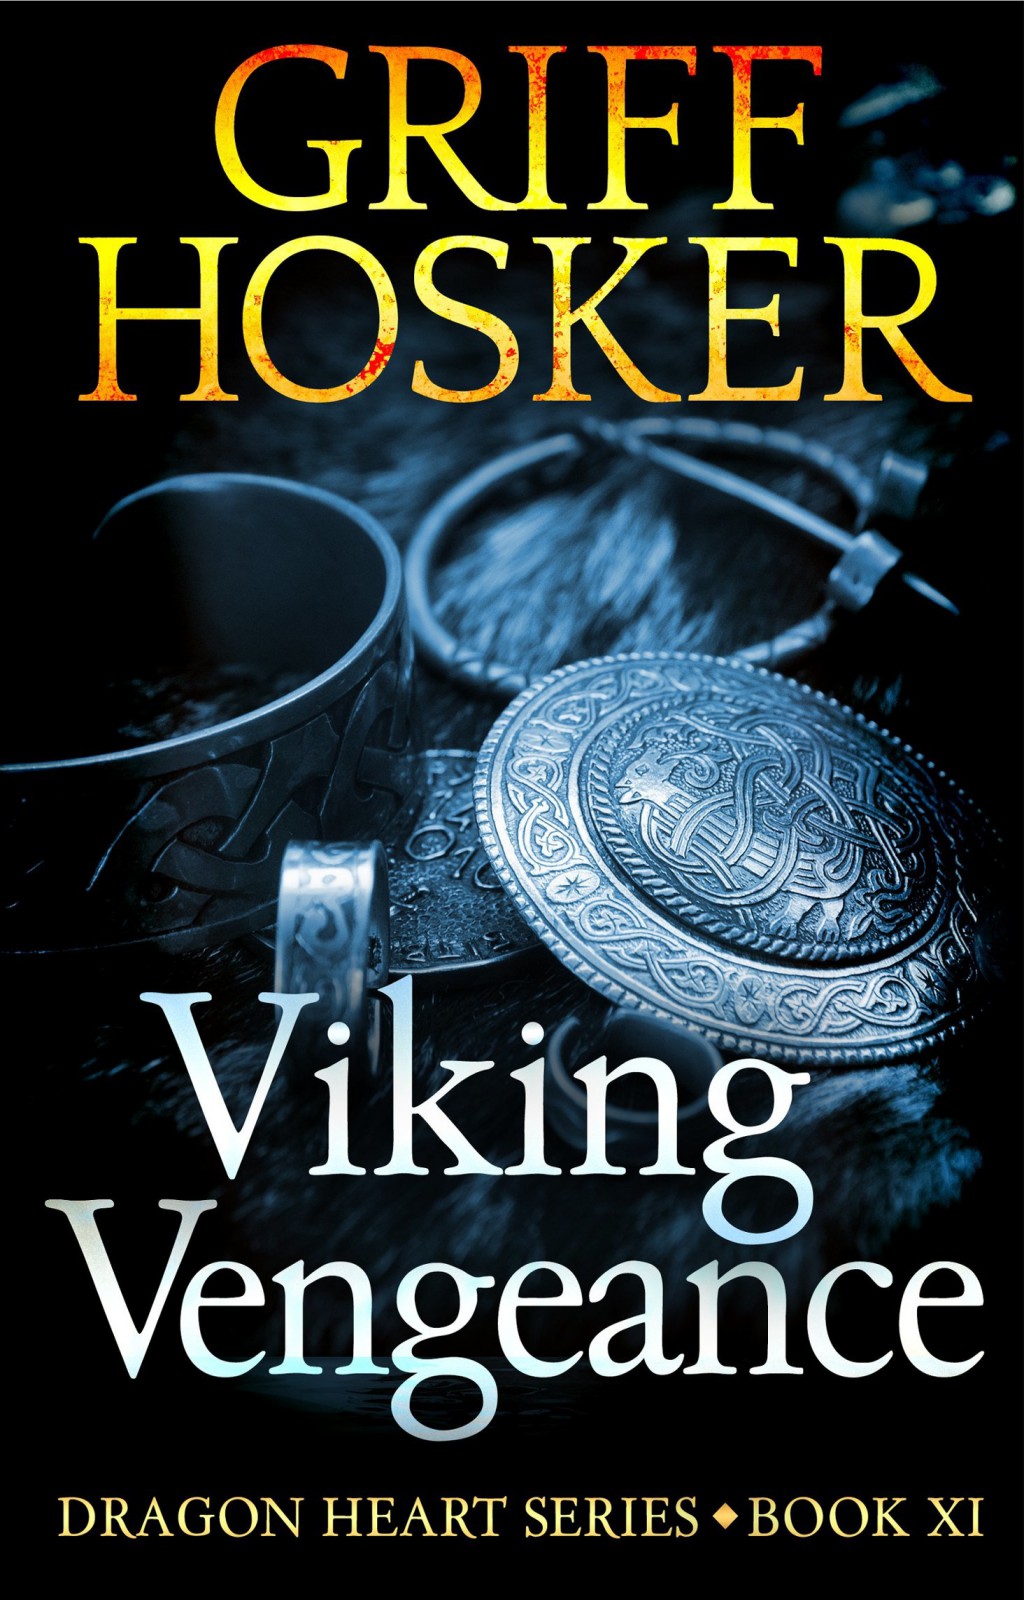 Viking Vengeance by Griff Hosker